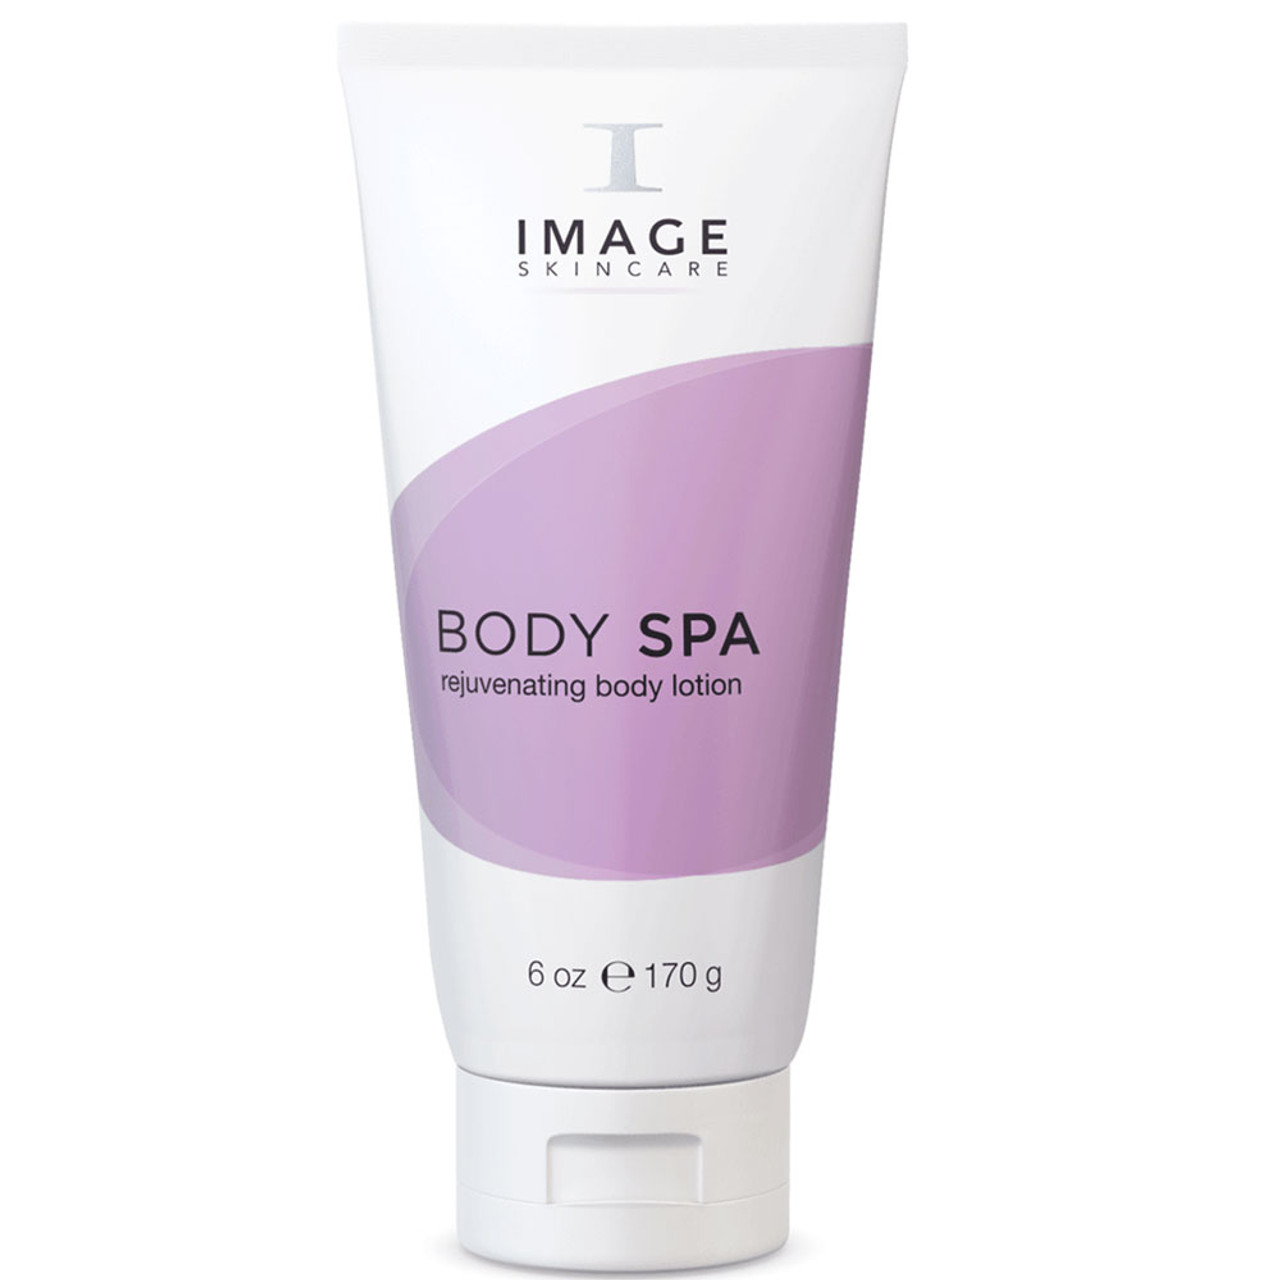 IMAGE Skincare BODY SPA Rejuvenating Body Lotion BeautifiedYou.com